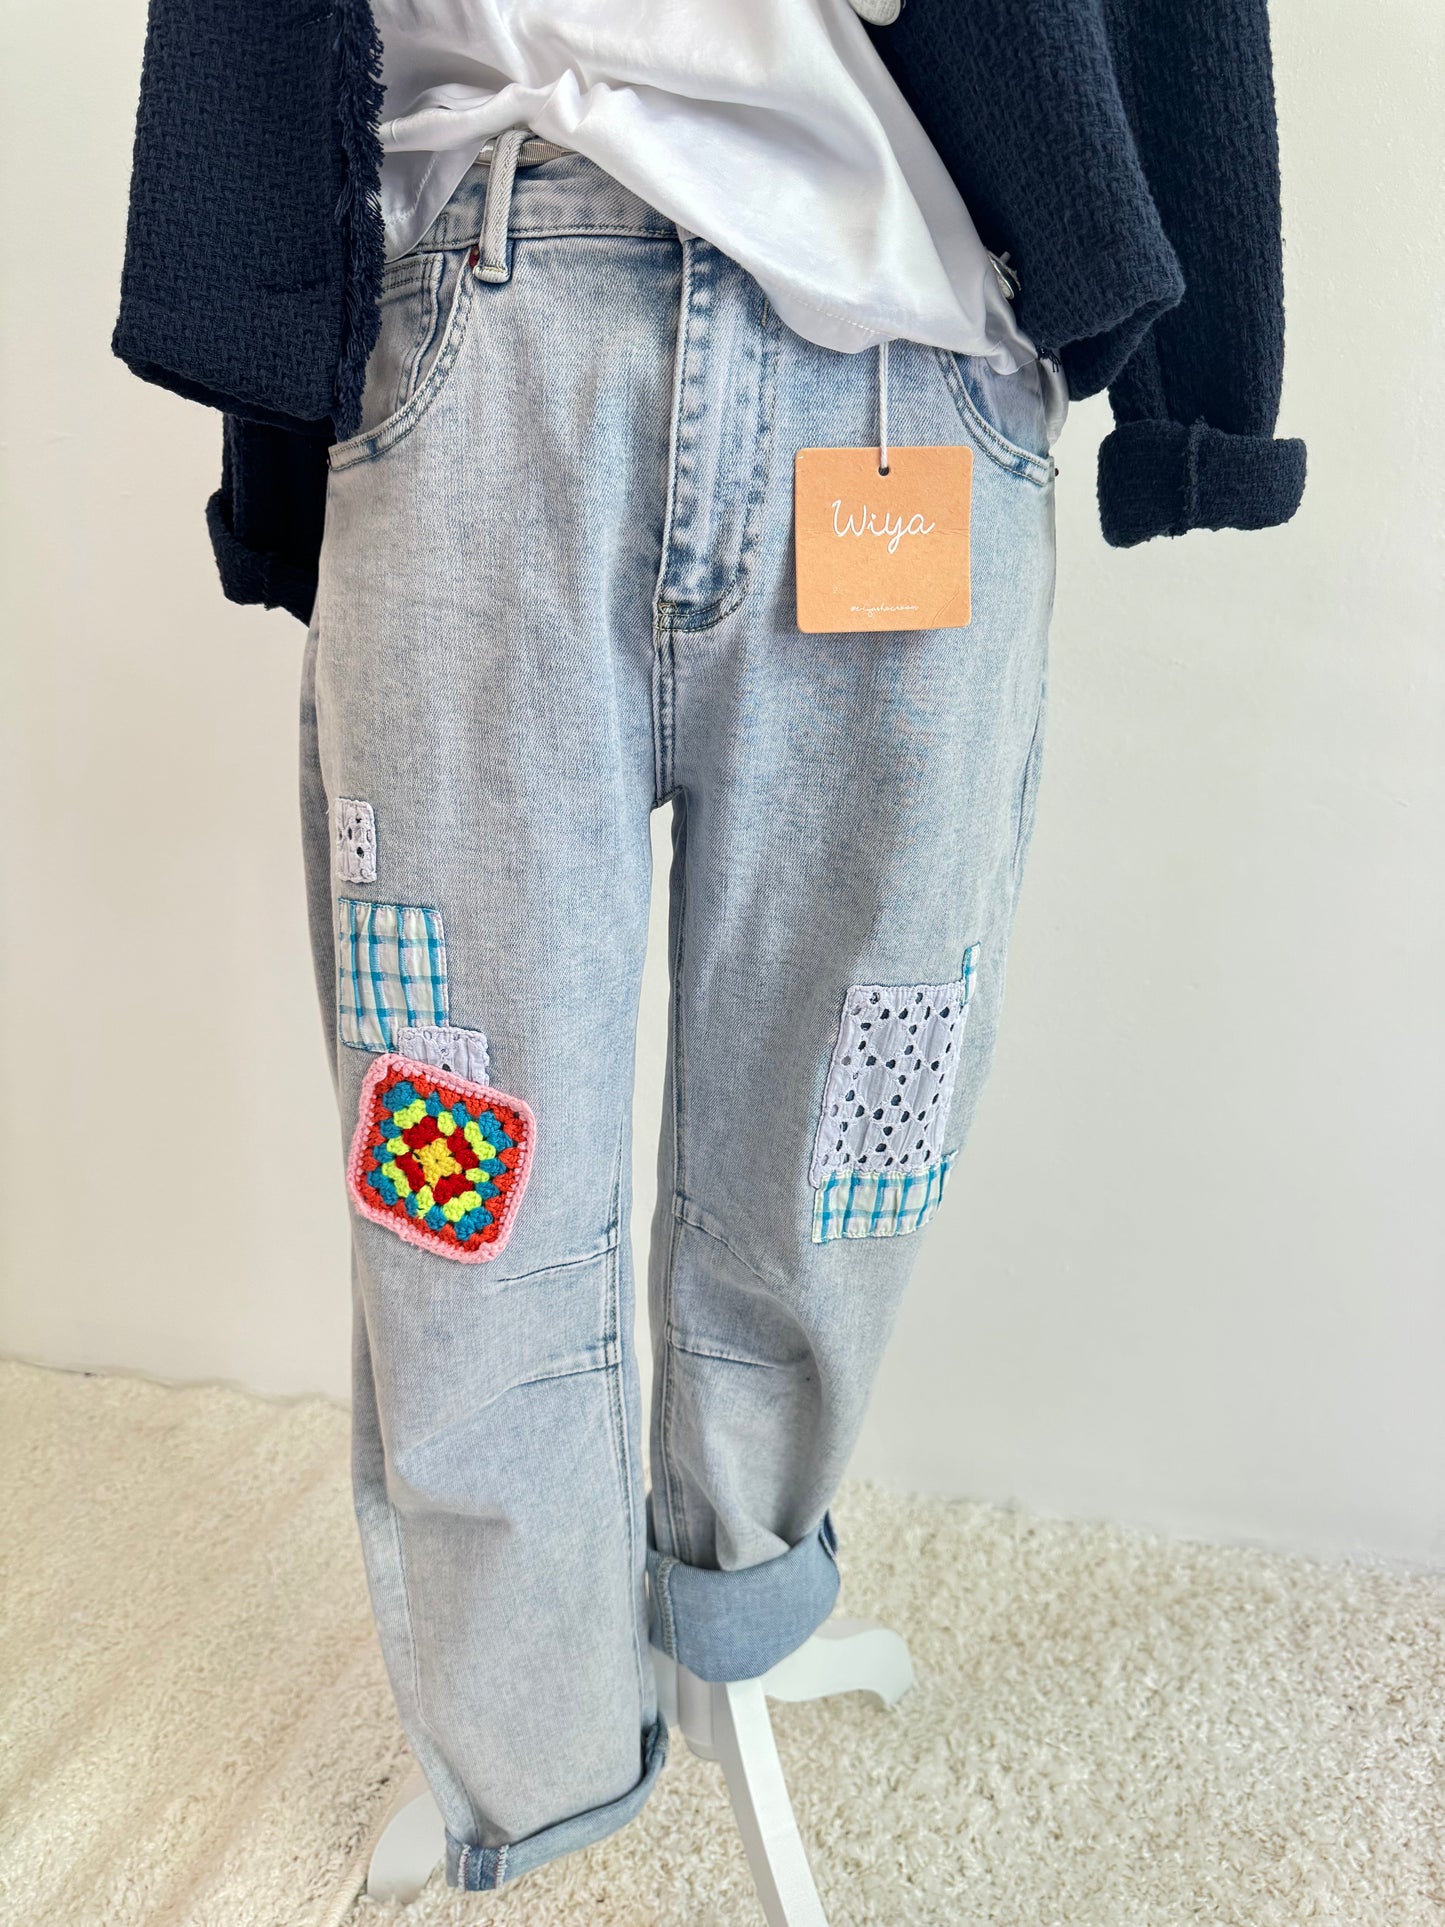 Jeanshose mit dem gewissen Etwas – Mode in M und XL für einen individuellen Look